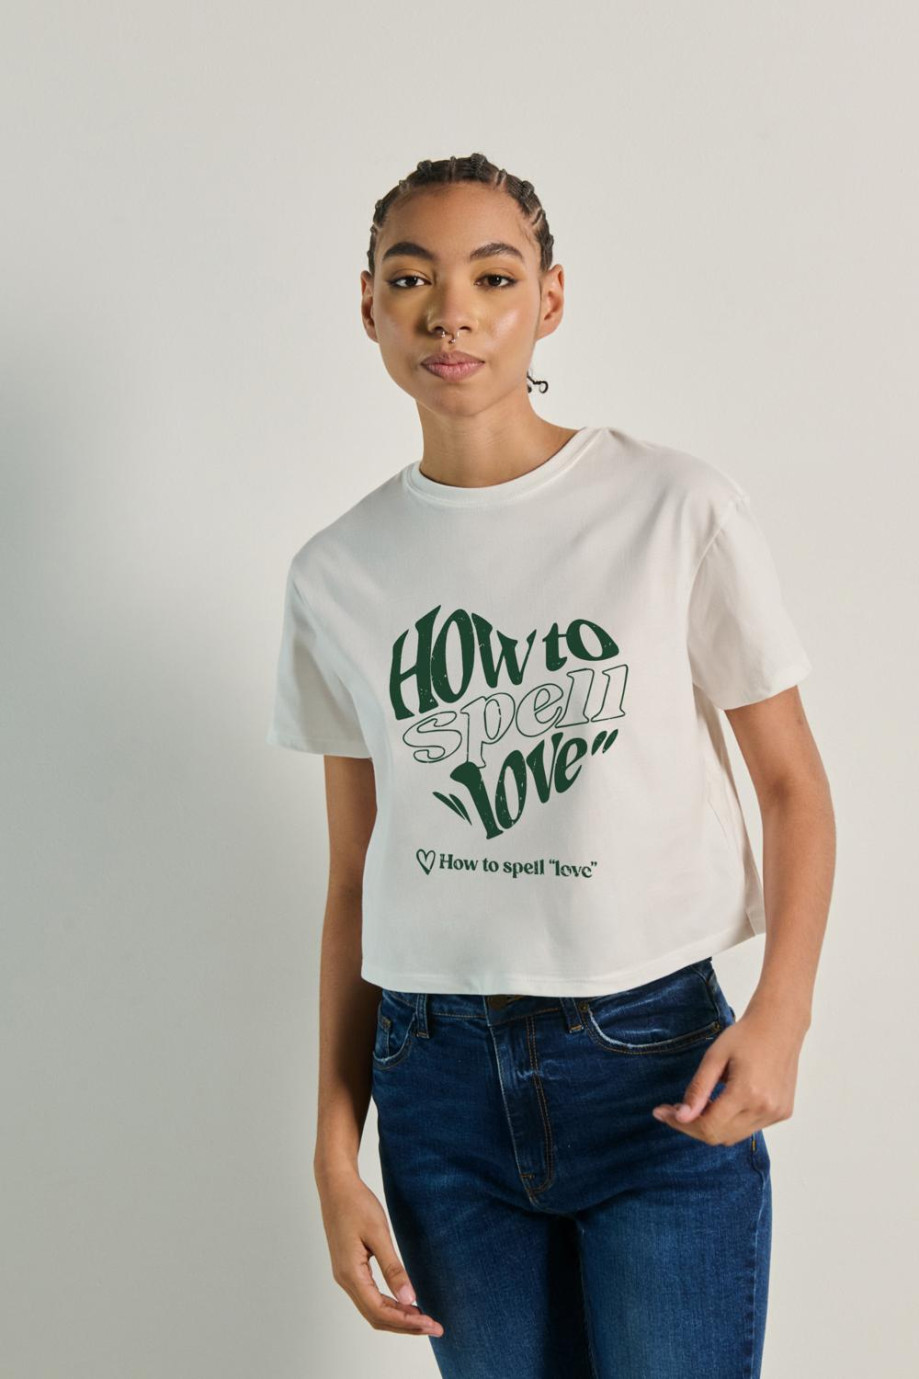 Camiseta unicolor crop top con frase estampada en frente